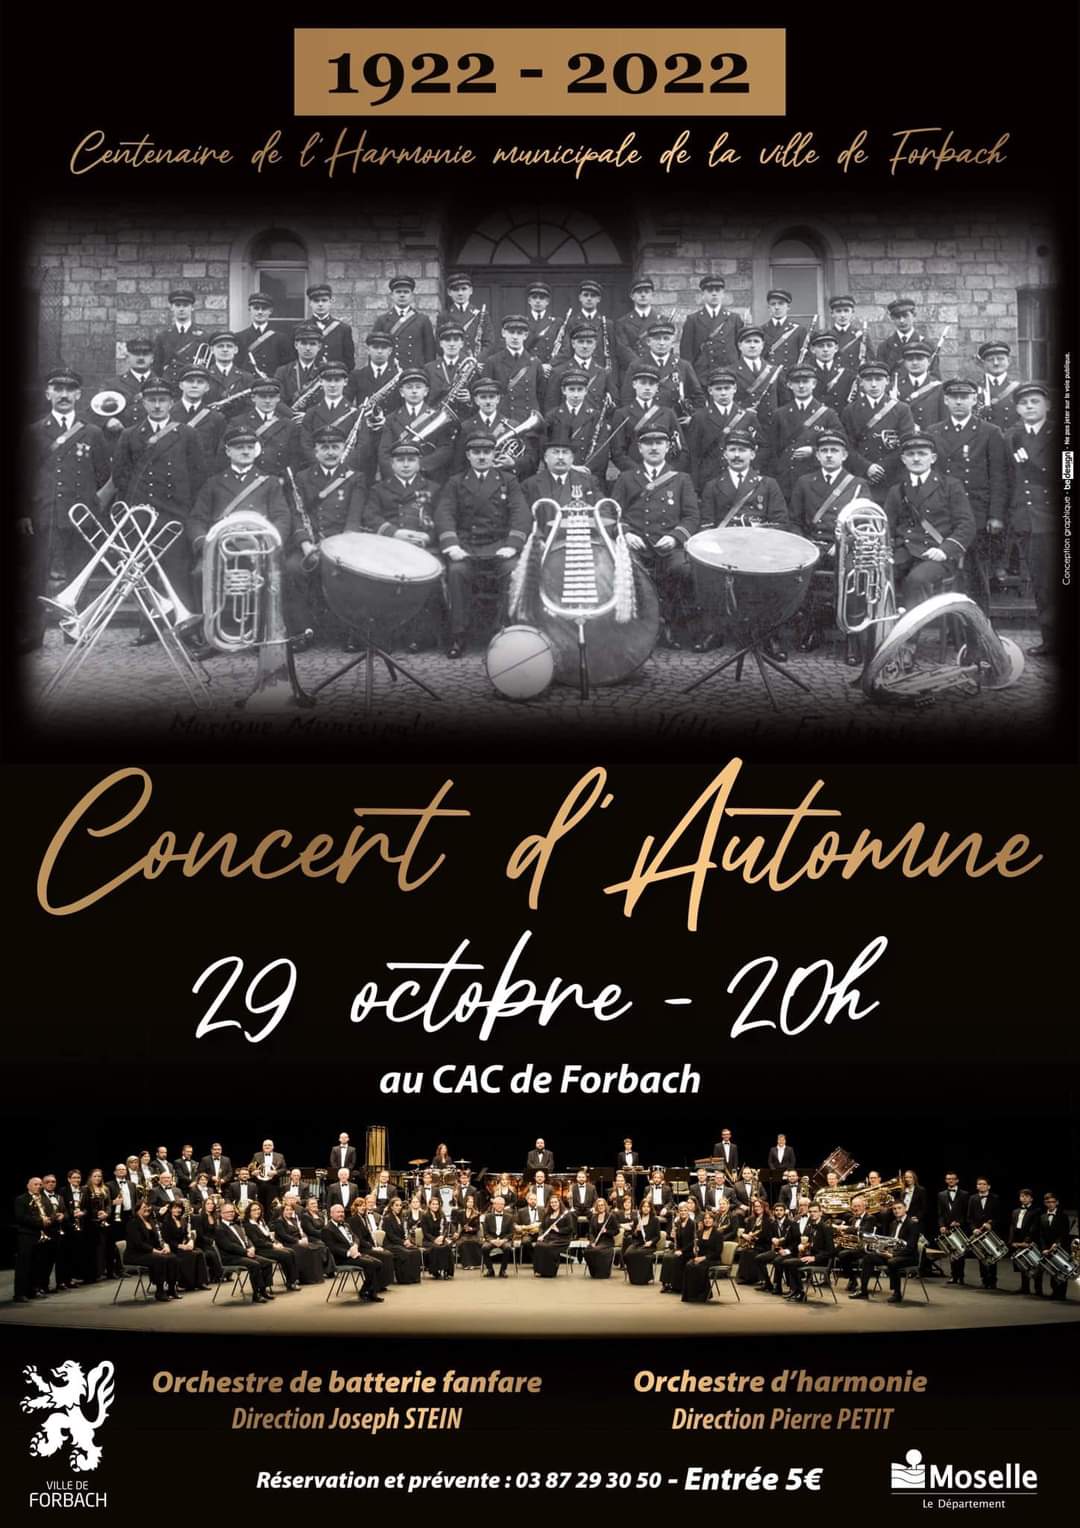 https://www.radiomelodie.com/agenda/1772723_concert-evenement-centenaire-de-lharmonie-municipale-de-forbach.jpg